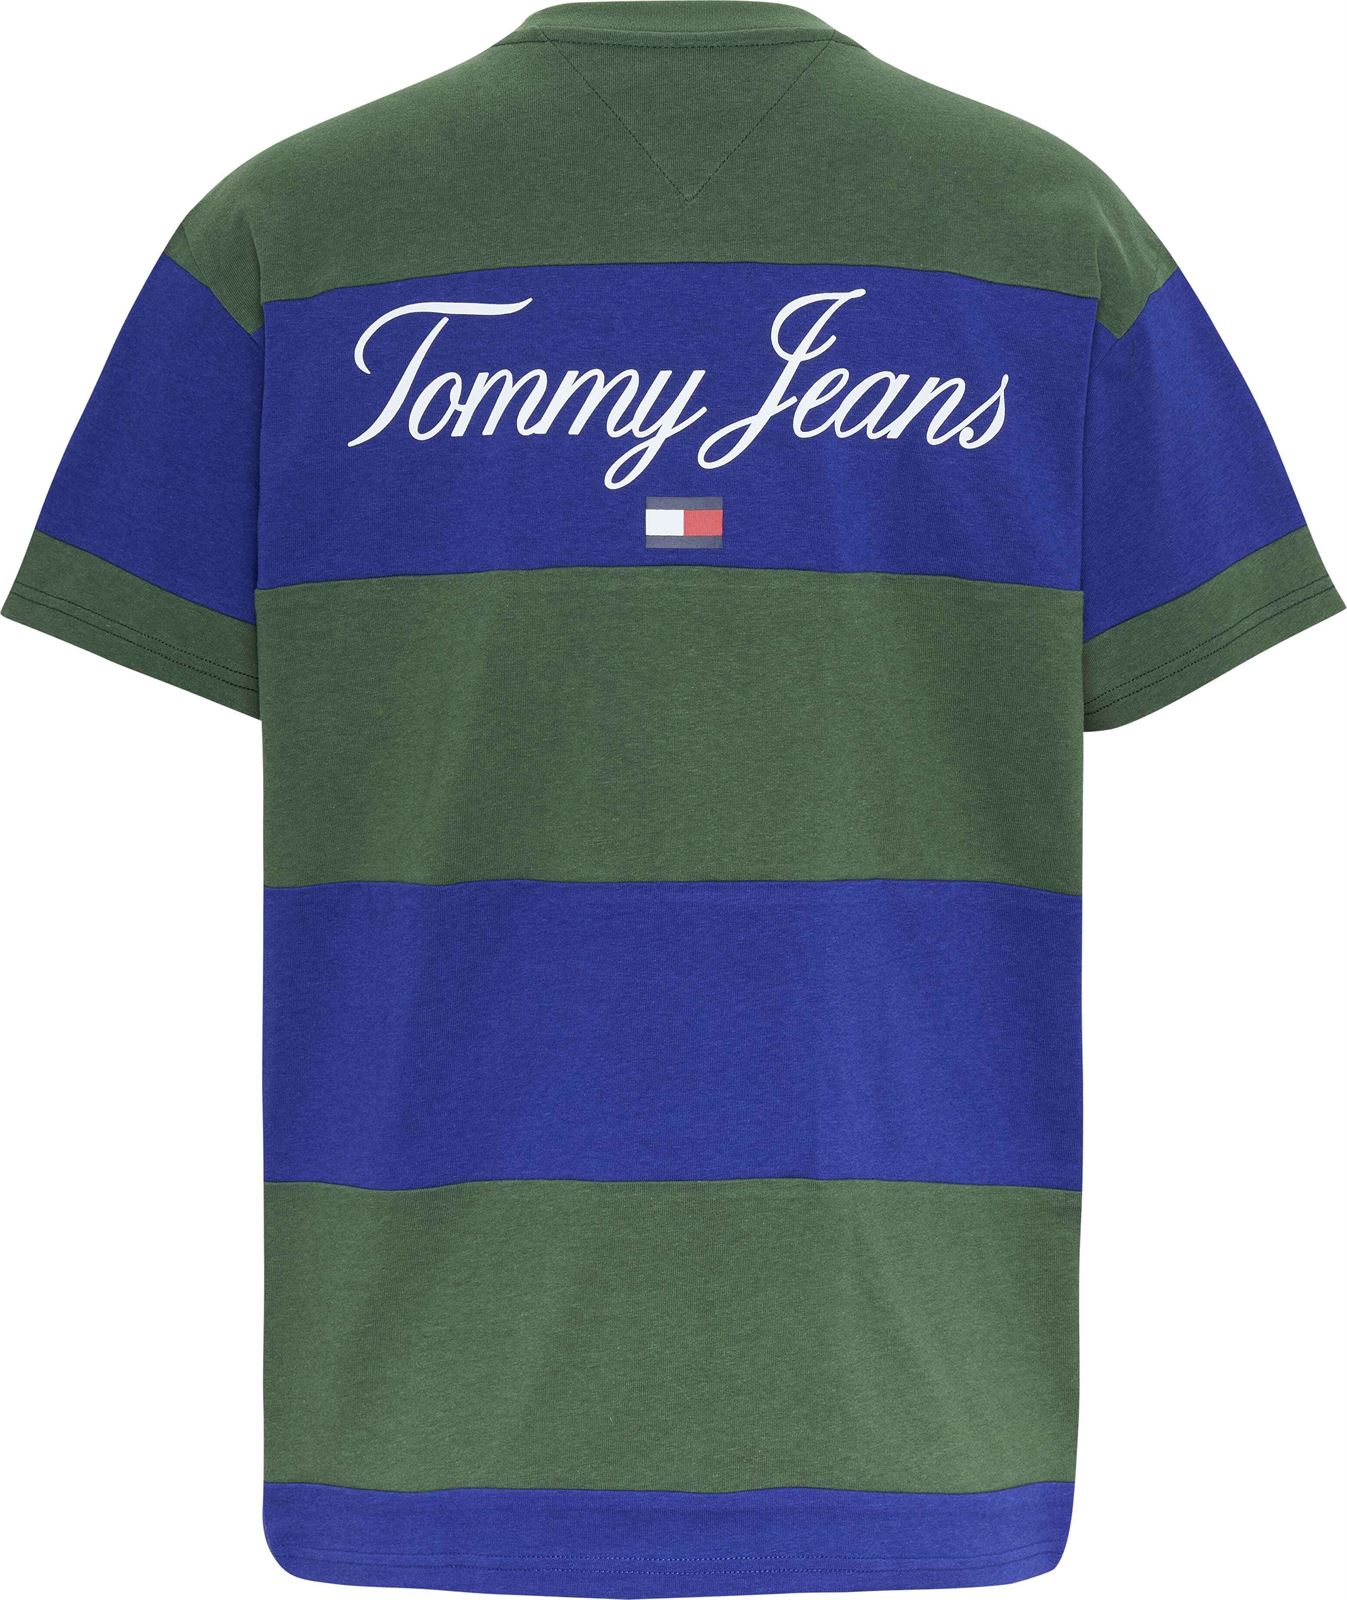 Camiseta TOMMY JEANS DM0DM16836 C9B navy voyage/multi - Imagen 3